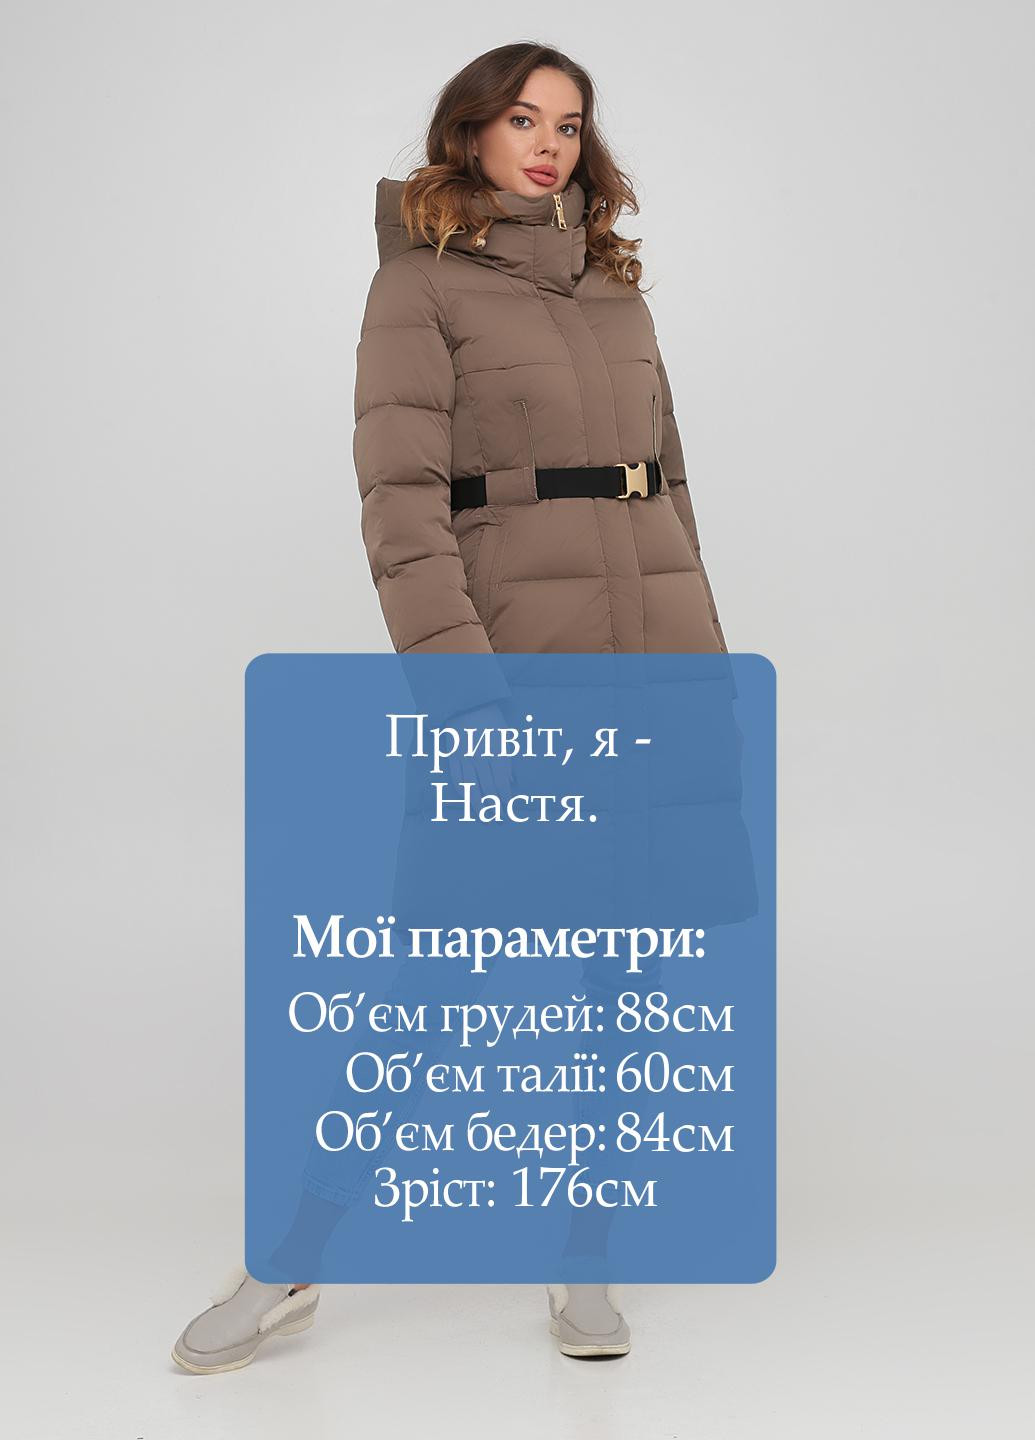 Кофейная зимняя куртка Clasna